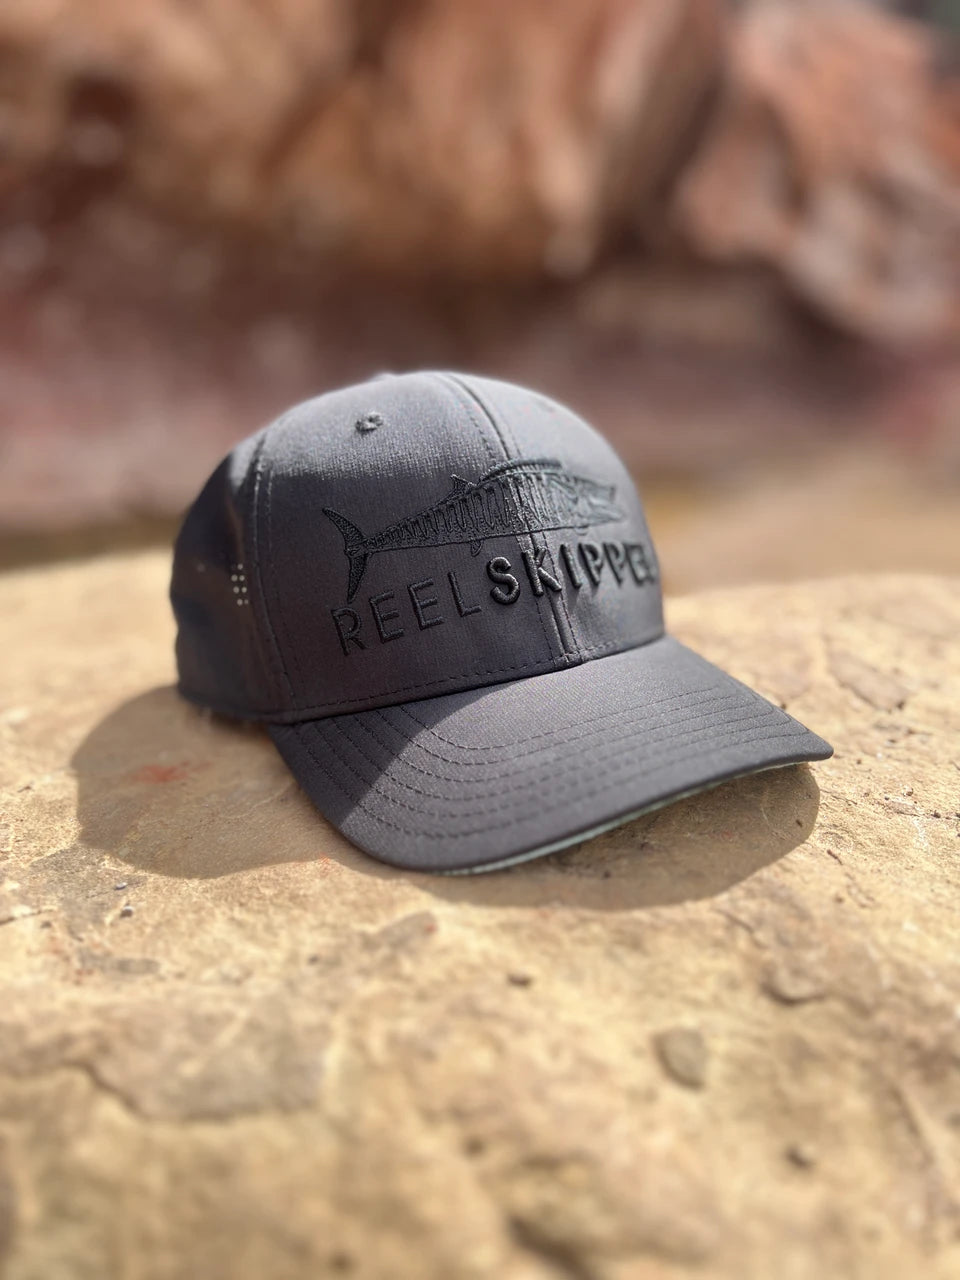 Women's Hats, Visors & Sun Masks for Fishing, Diving & SUP – Reel